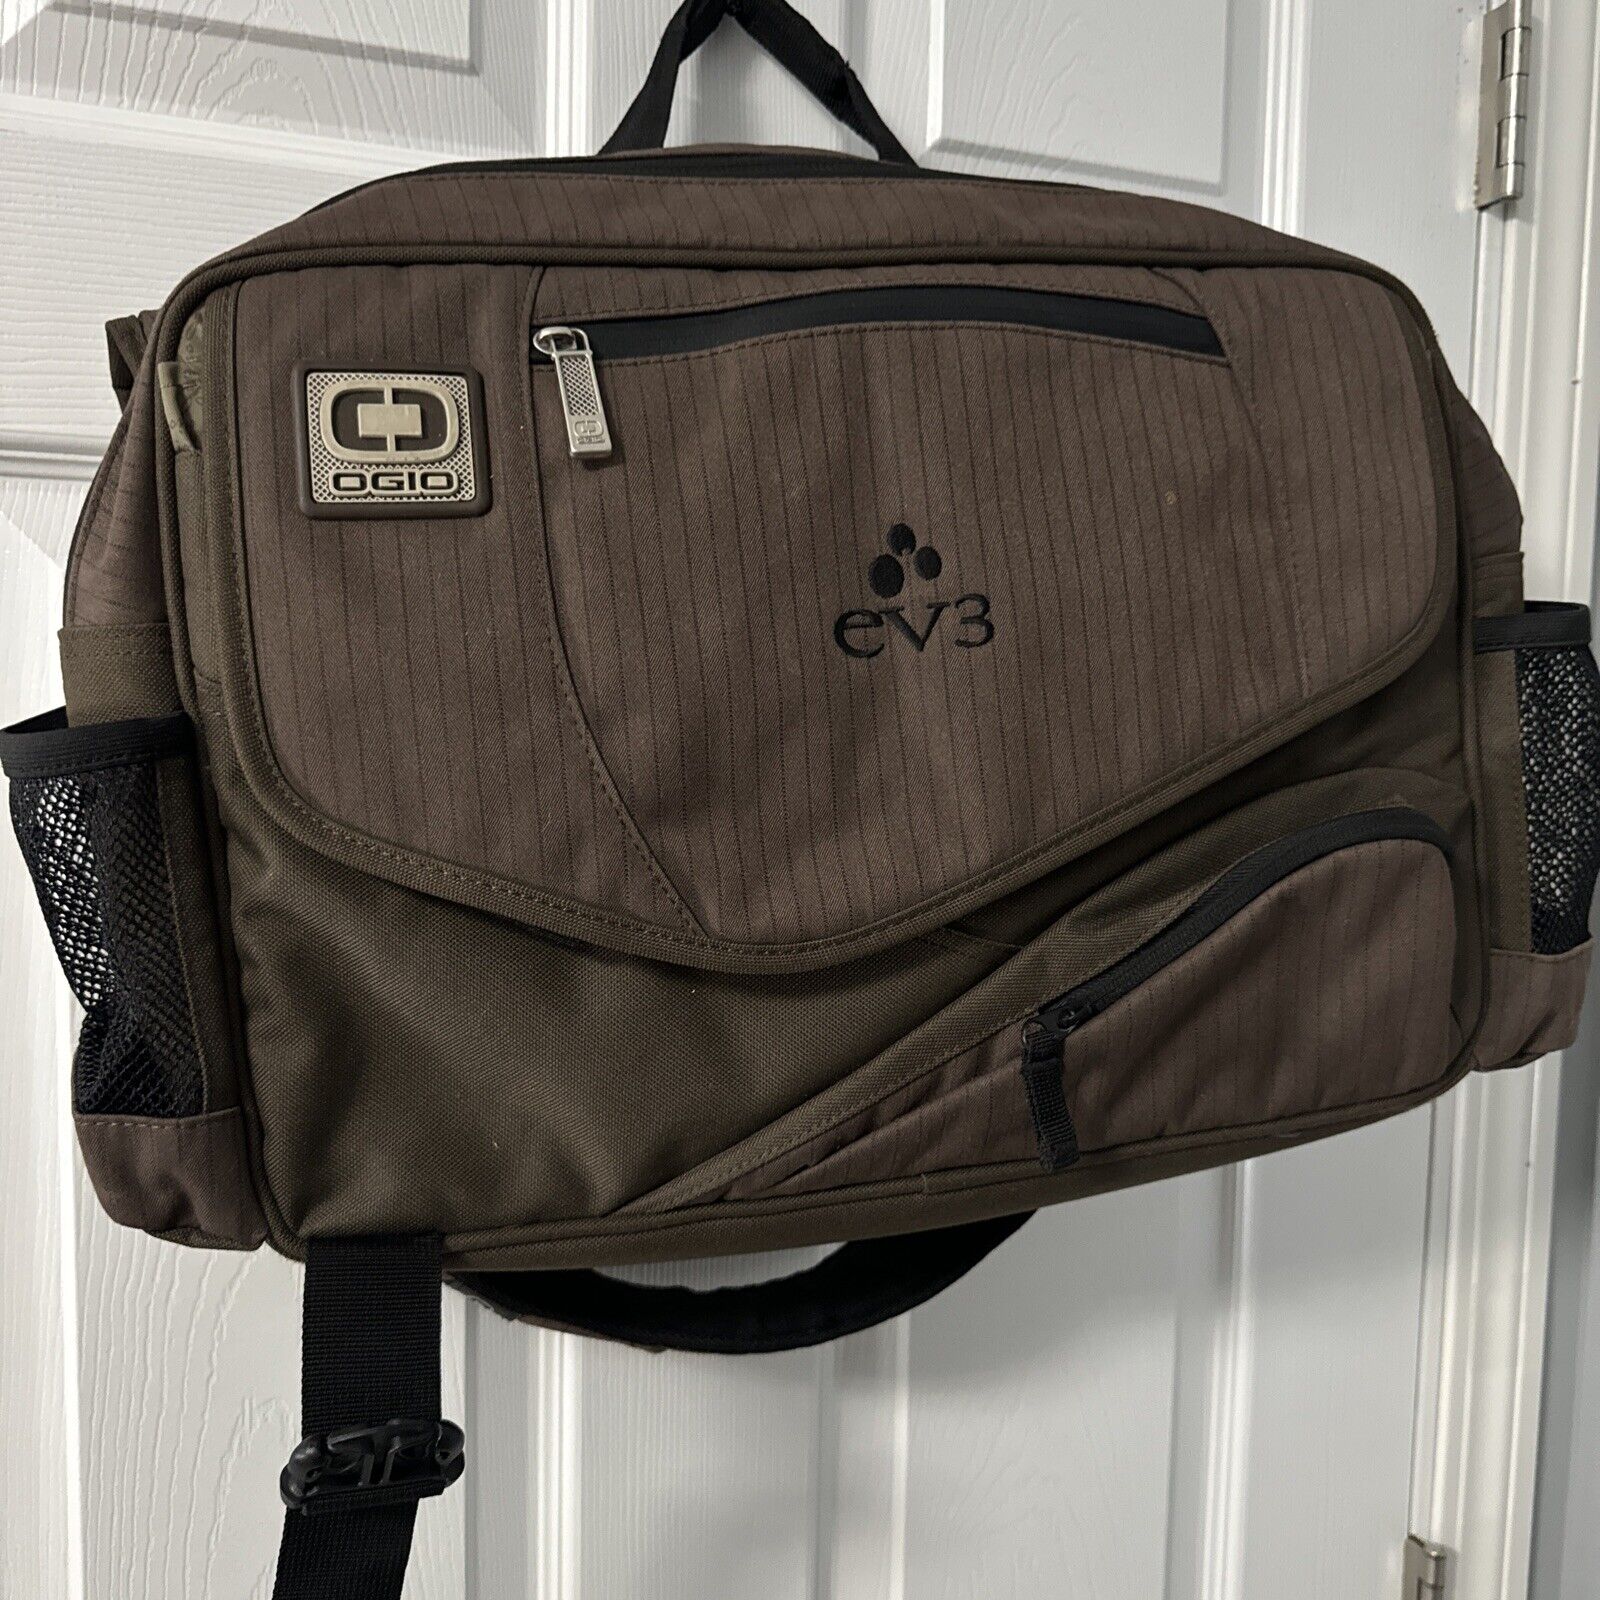 Ogio EV3 Brown Laptop Bag Backpack With Adjustable Straps Many Pockets. GR60